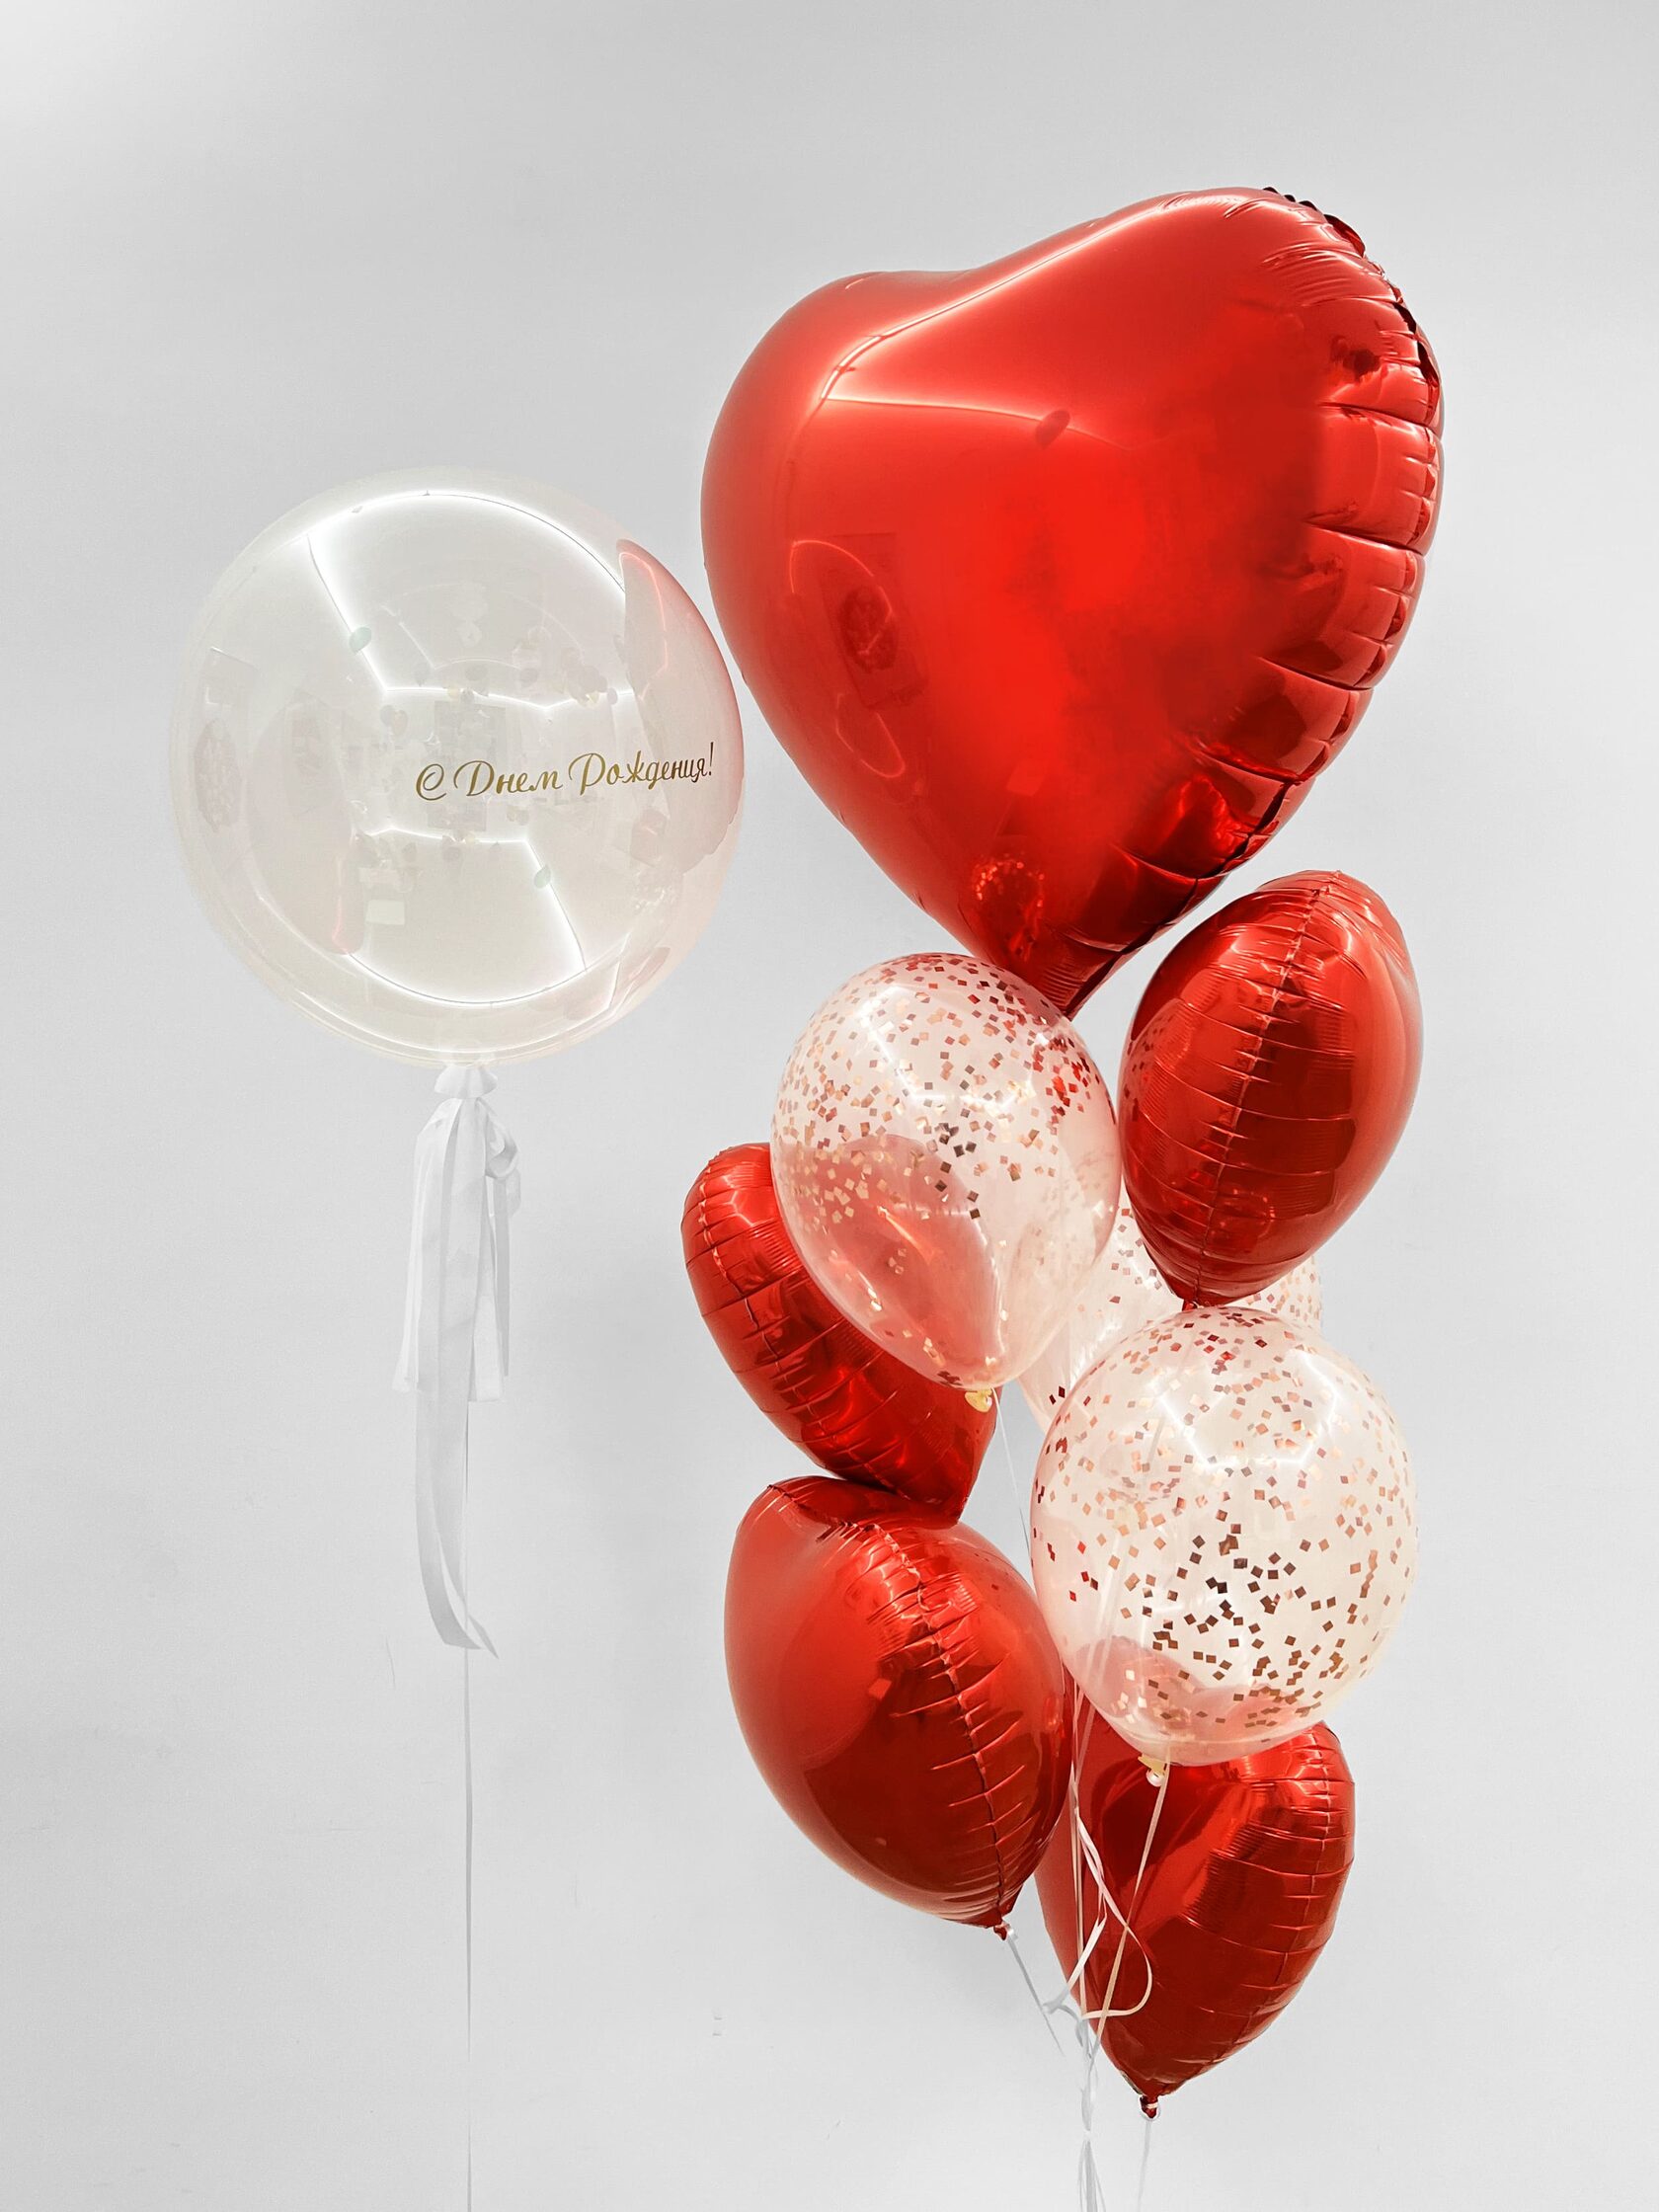 фонтан из воздушных шаров с гелием футбол 5 шт Фонтан из шаров «Алое сердце» - 10 шаров + шар Bubbles (сфера) - красные сердца конфетти